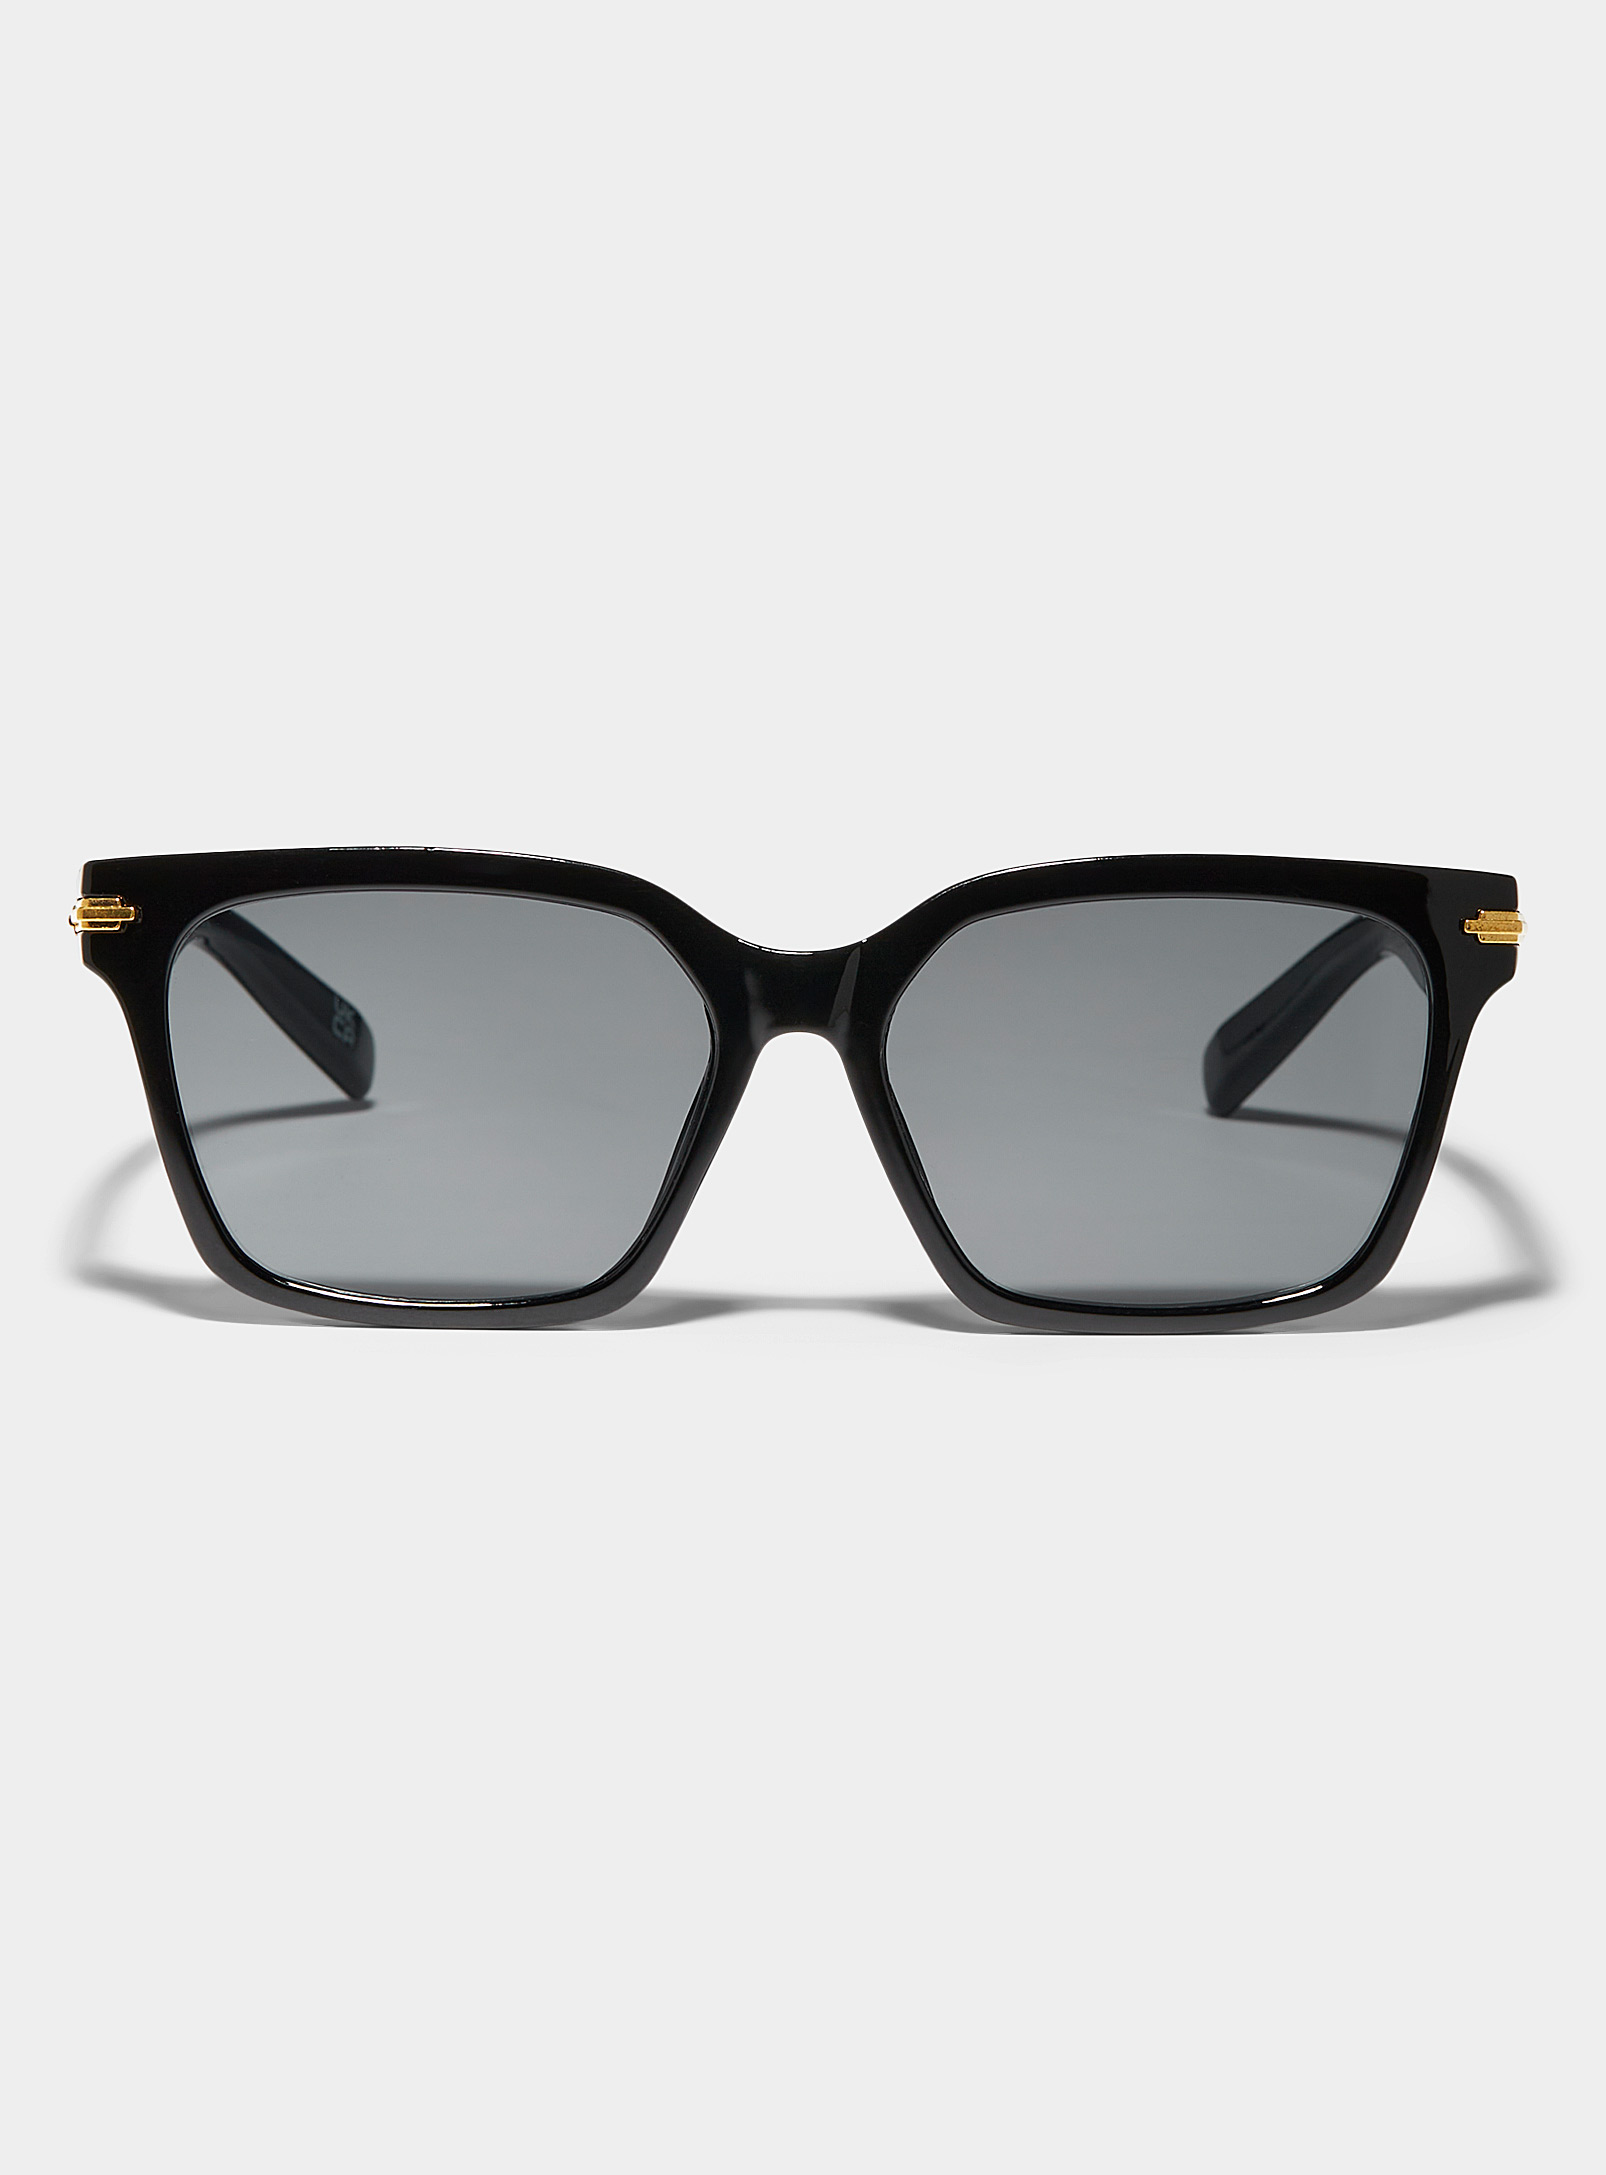 Aire Galileo Square Sunglasses In Black